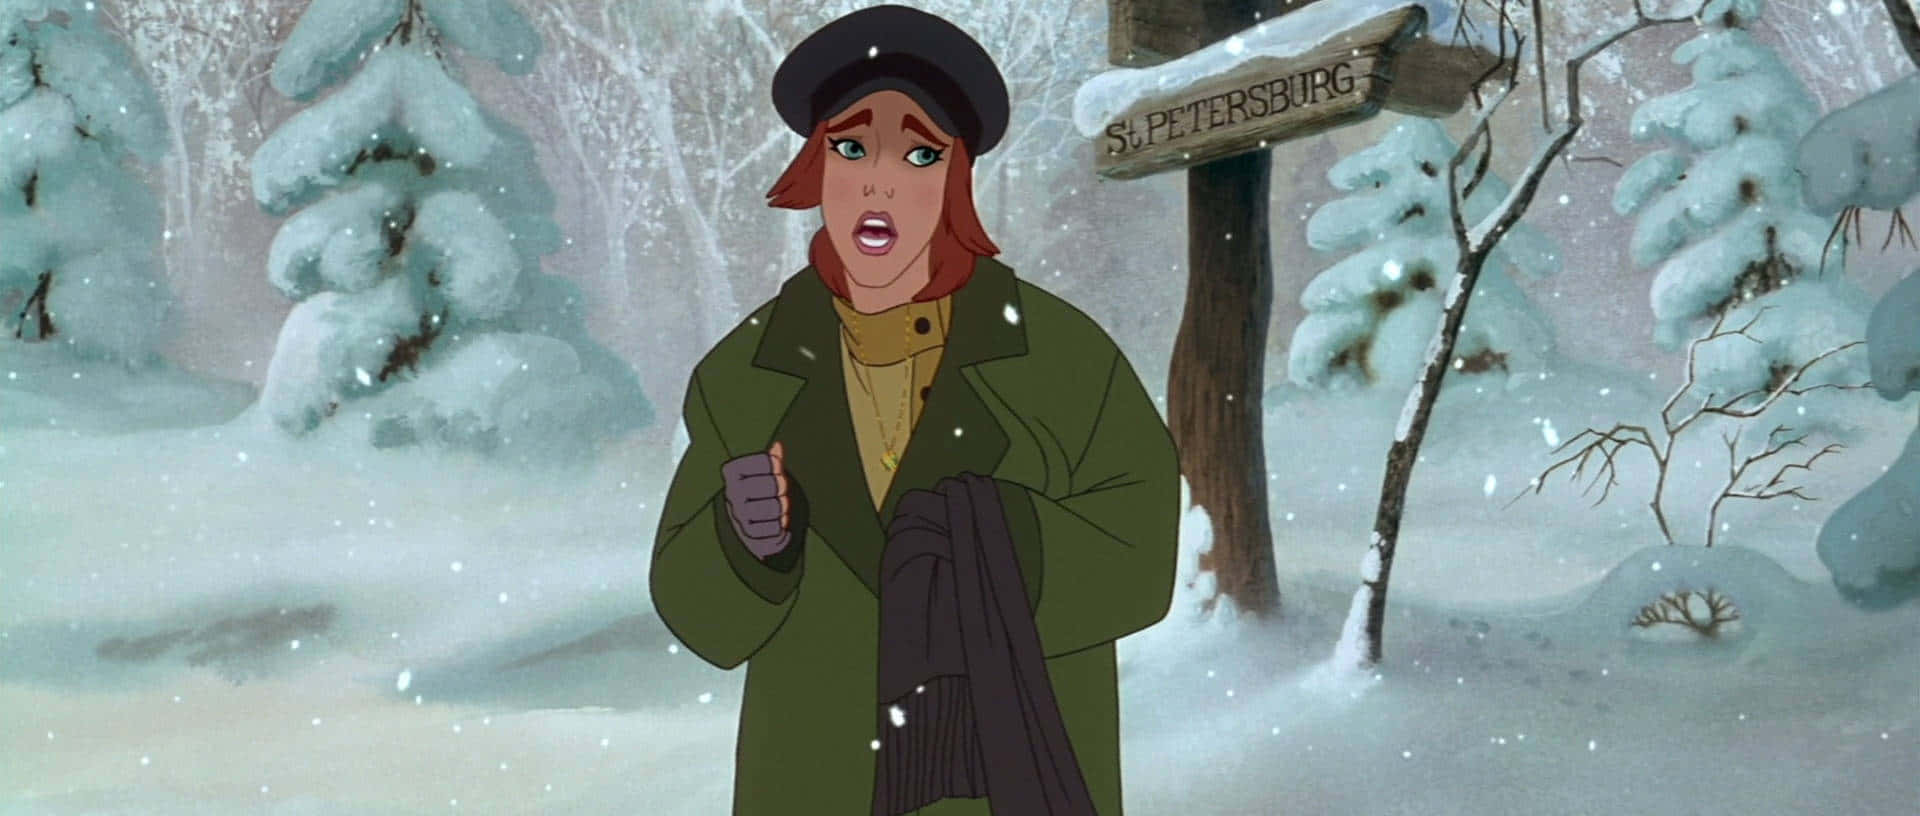 Einecartoon-figur In Einem Mantel Und Hut, Die Im Schnee Steht.